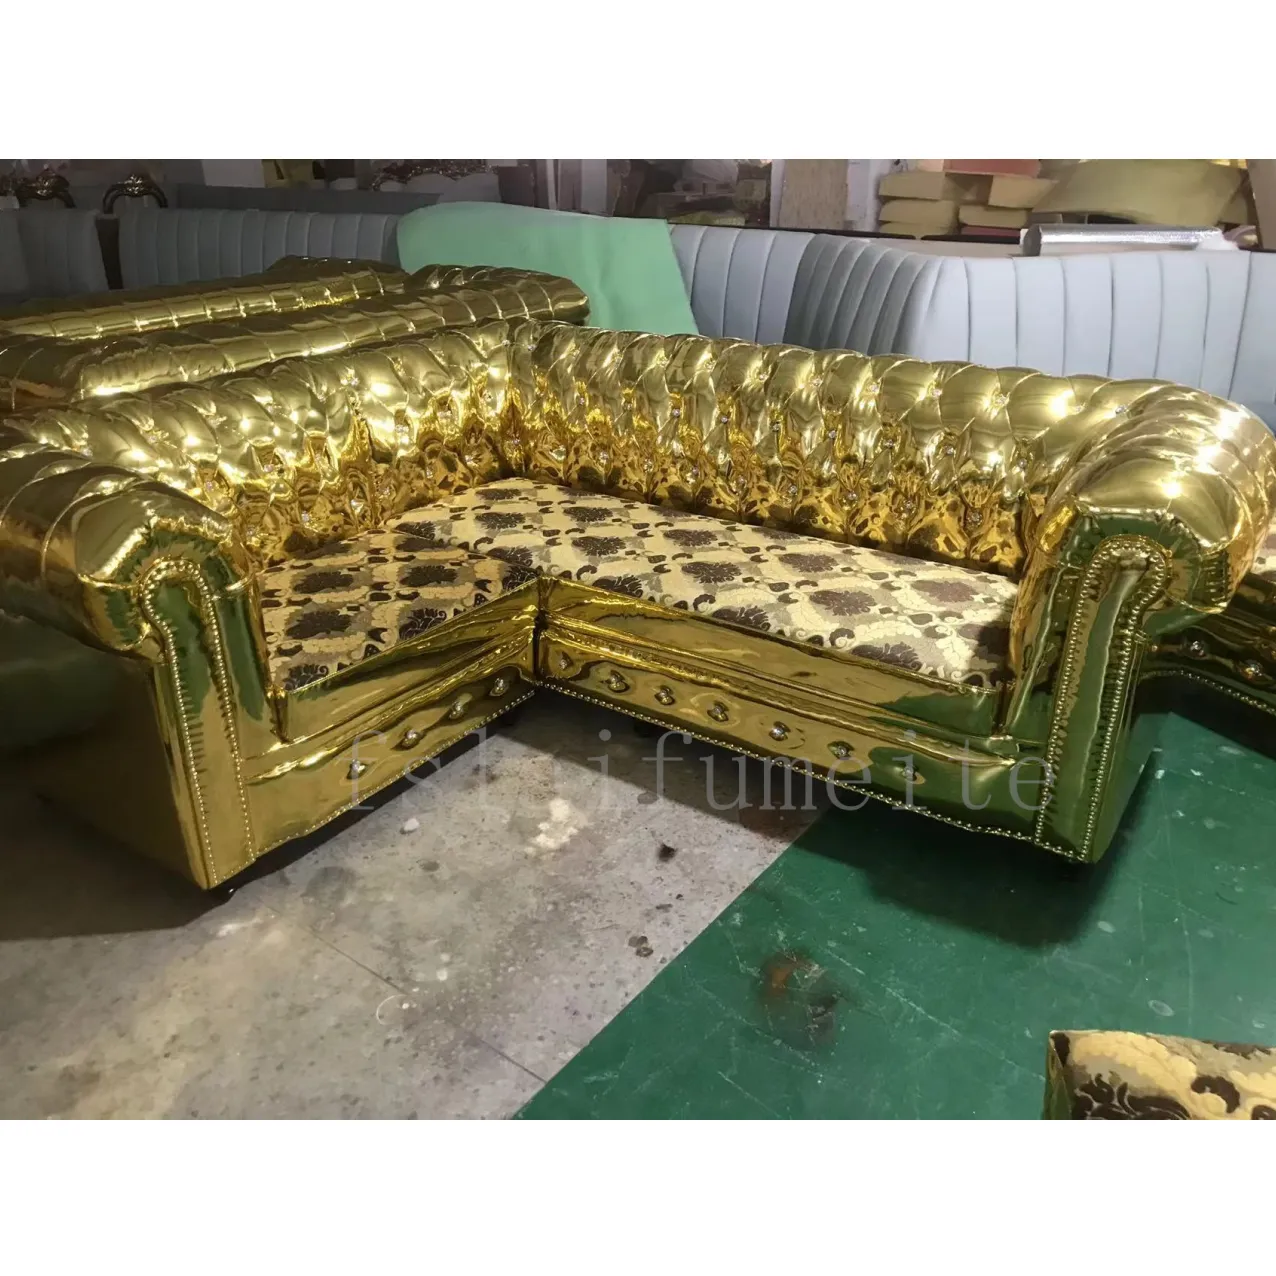 Комплект диванов chesterfield из искусственной кожи на пуговицах, роскошный модульный диван для дискотеки, ночного клуба, клуба, бара, для продажи